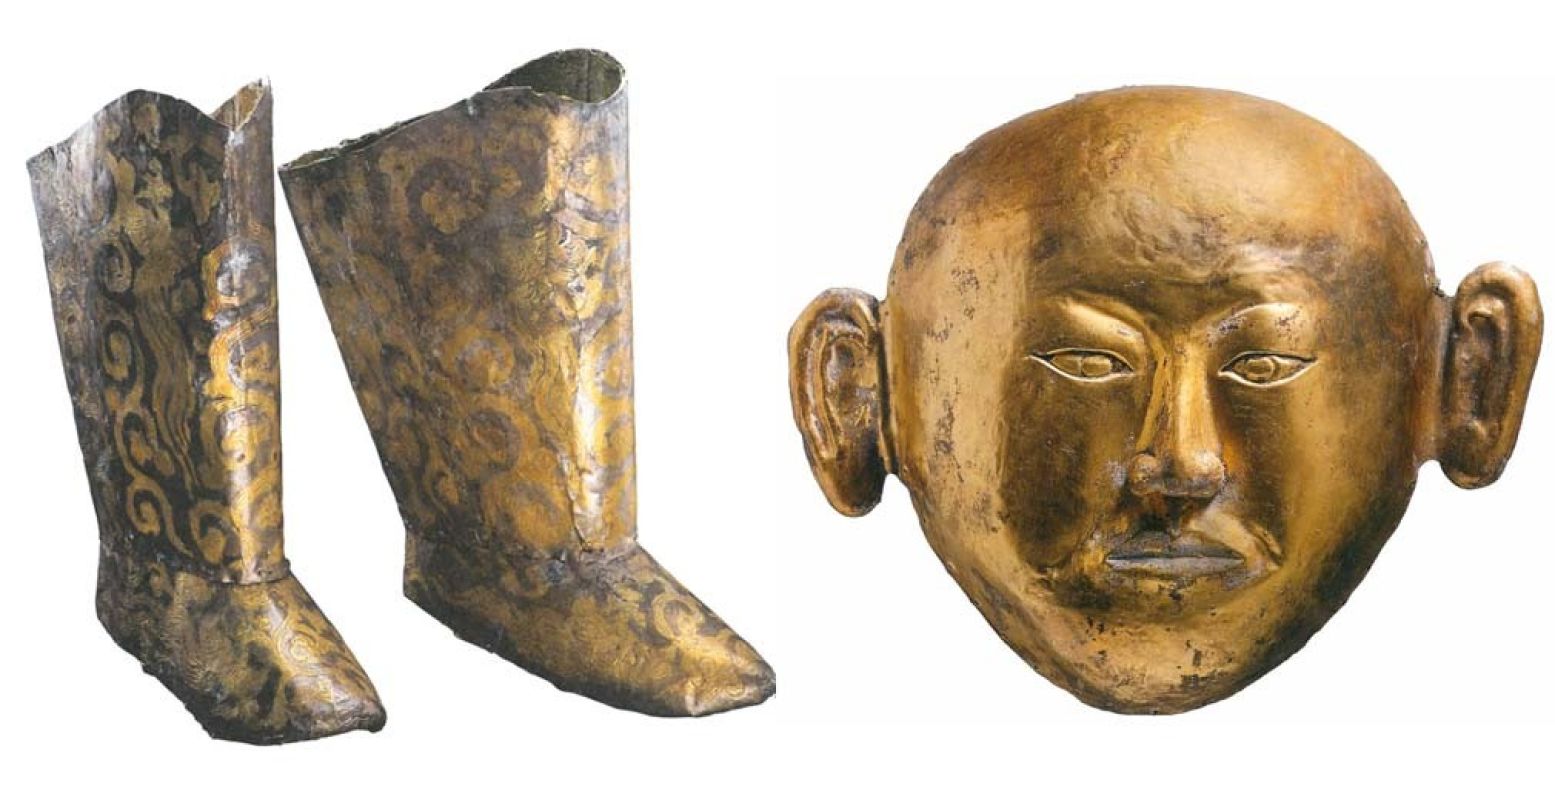 Het dodengraf van de prinses van Chen: een gouden masker en zilveren laarzen. Foto: Sake Elzinga